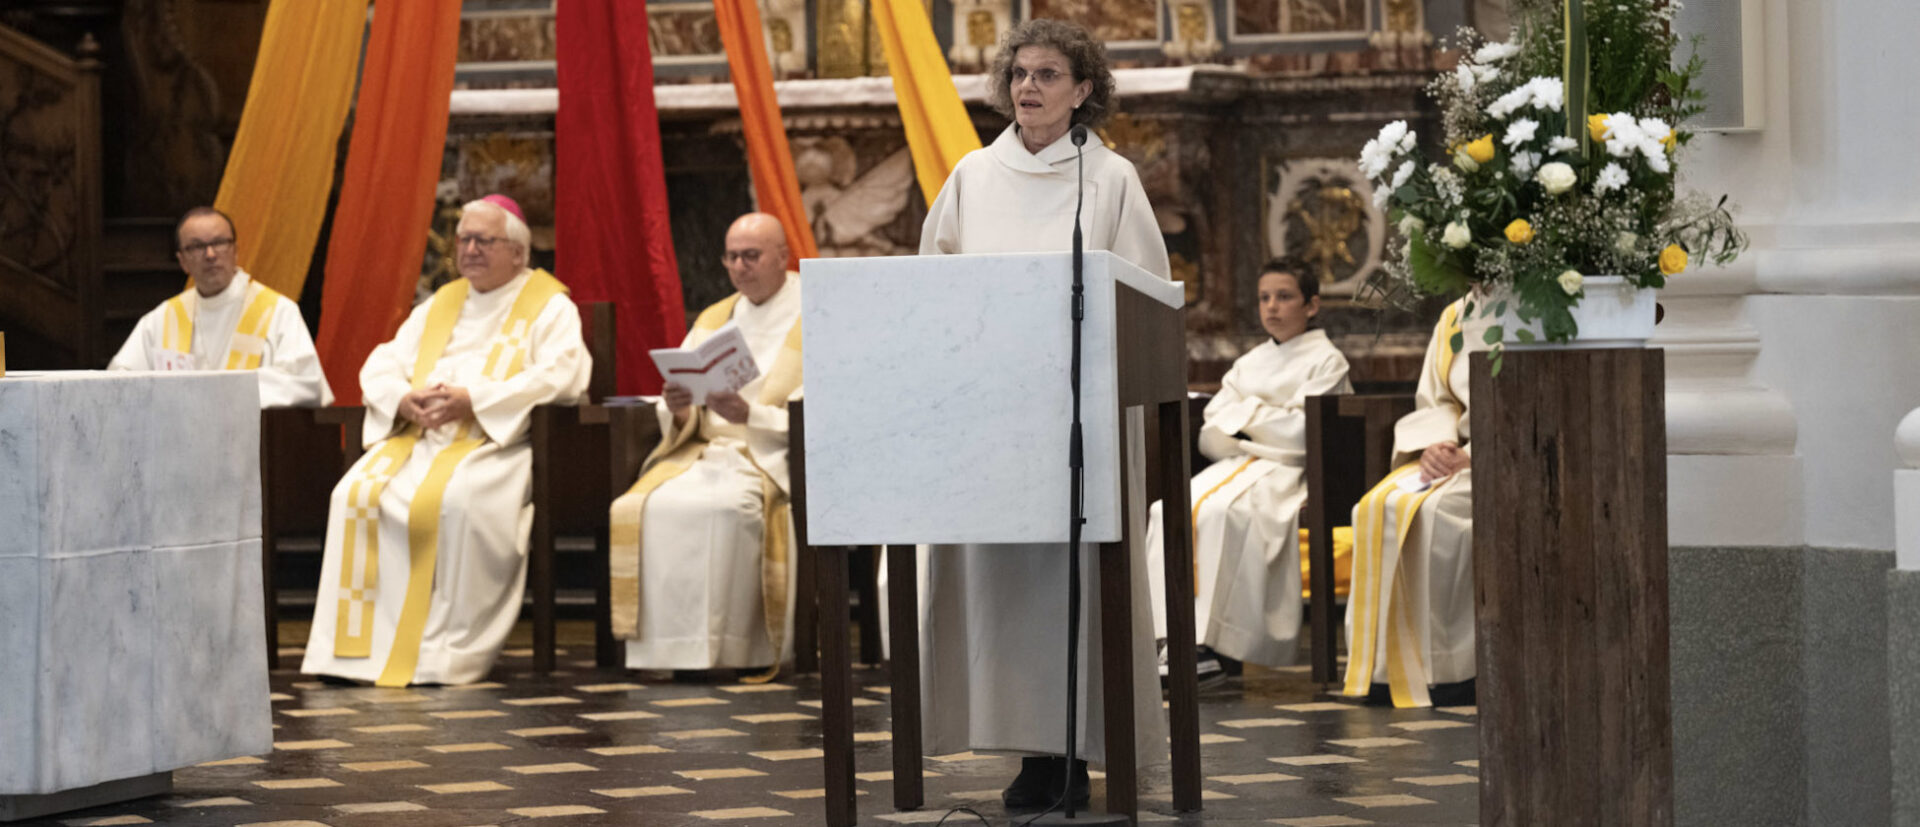 Marie-Louise Beyeler ist Präsidentin der Landeskirche Bern und hält die Predigt anlässlich des Jubiläums 50 Jahre Römisch-Katholische Zentralkonferenz der Schweiz